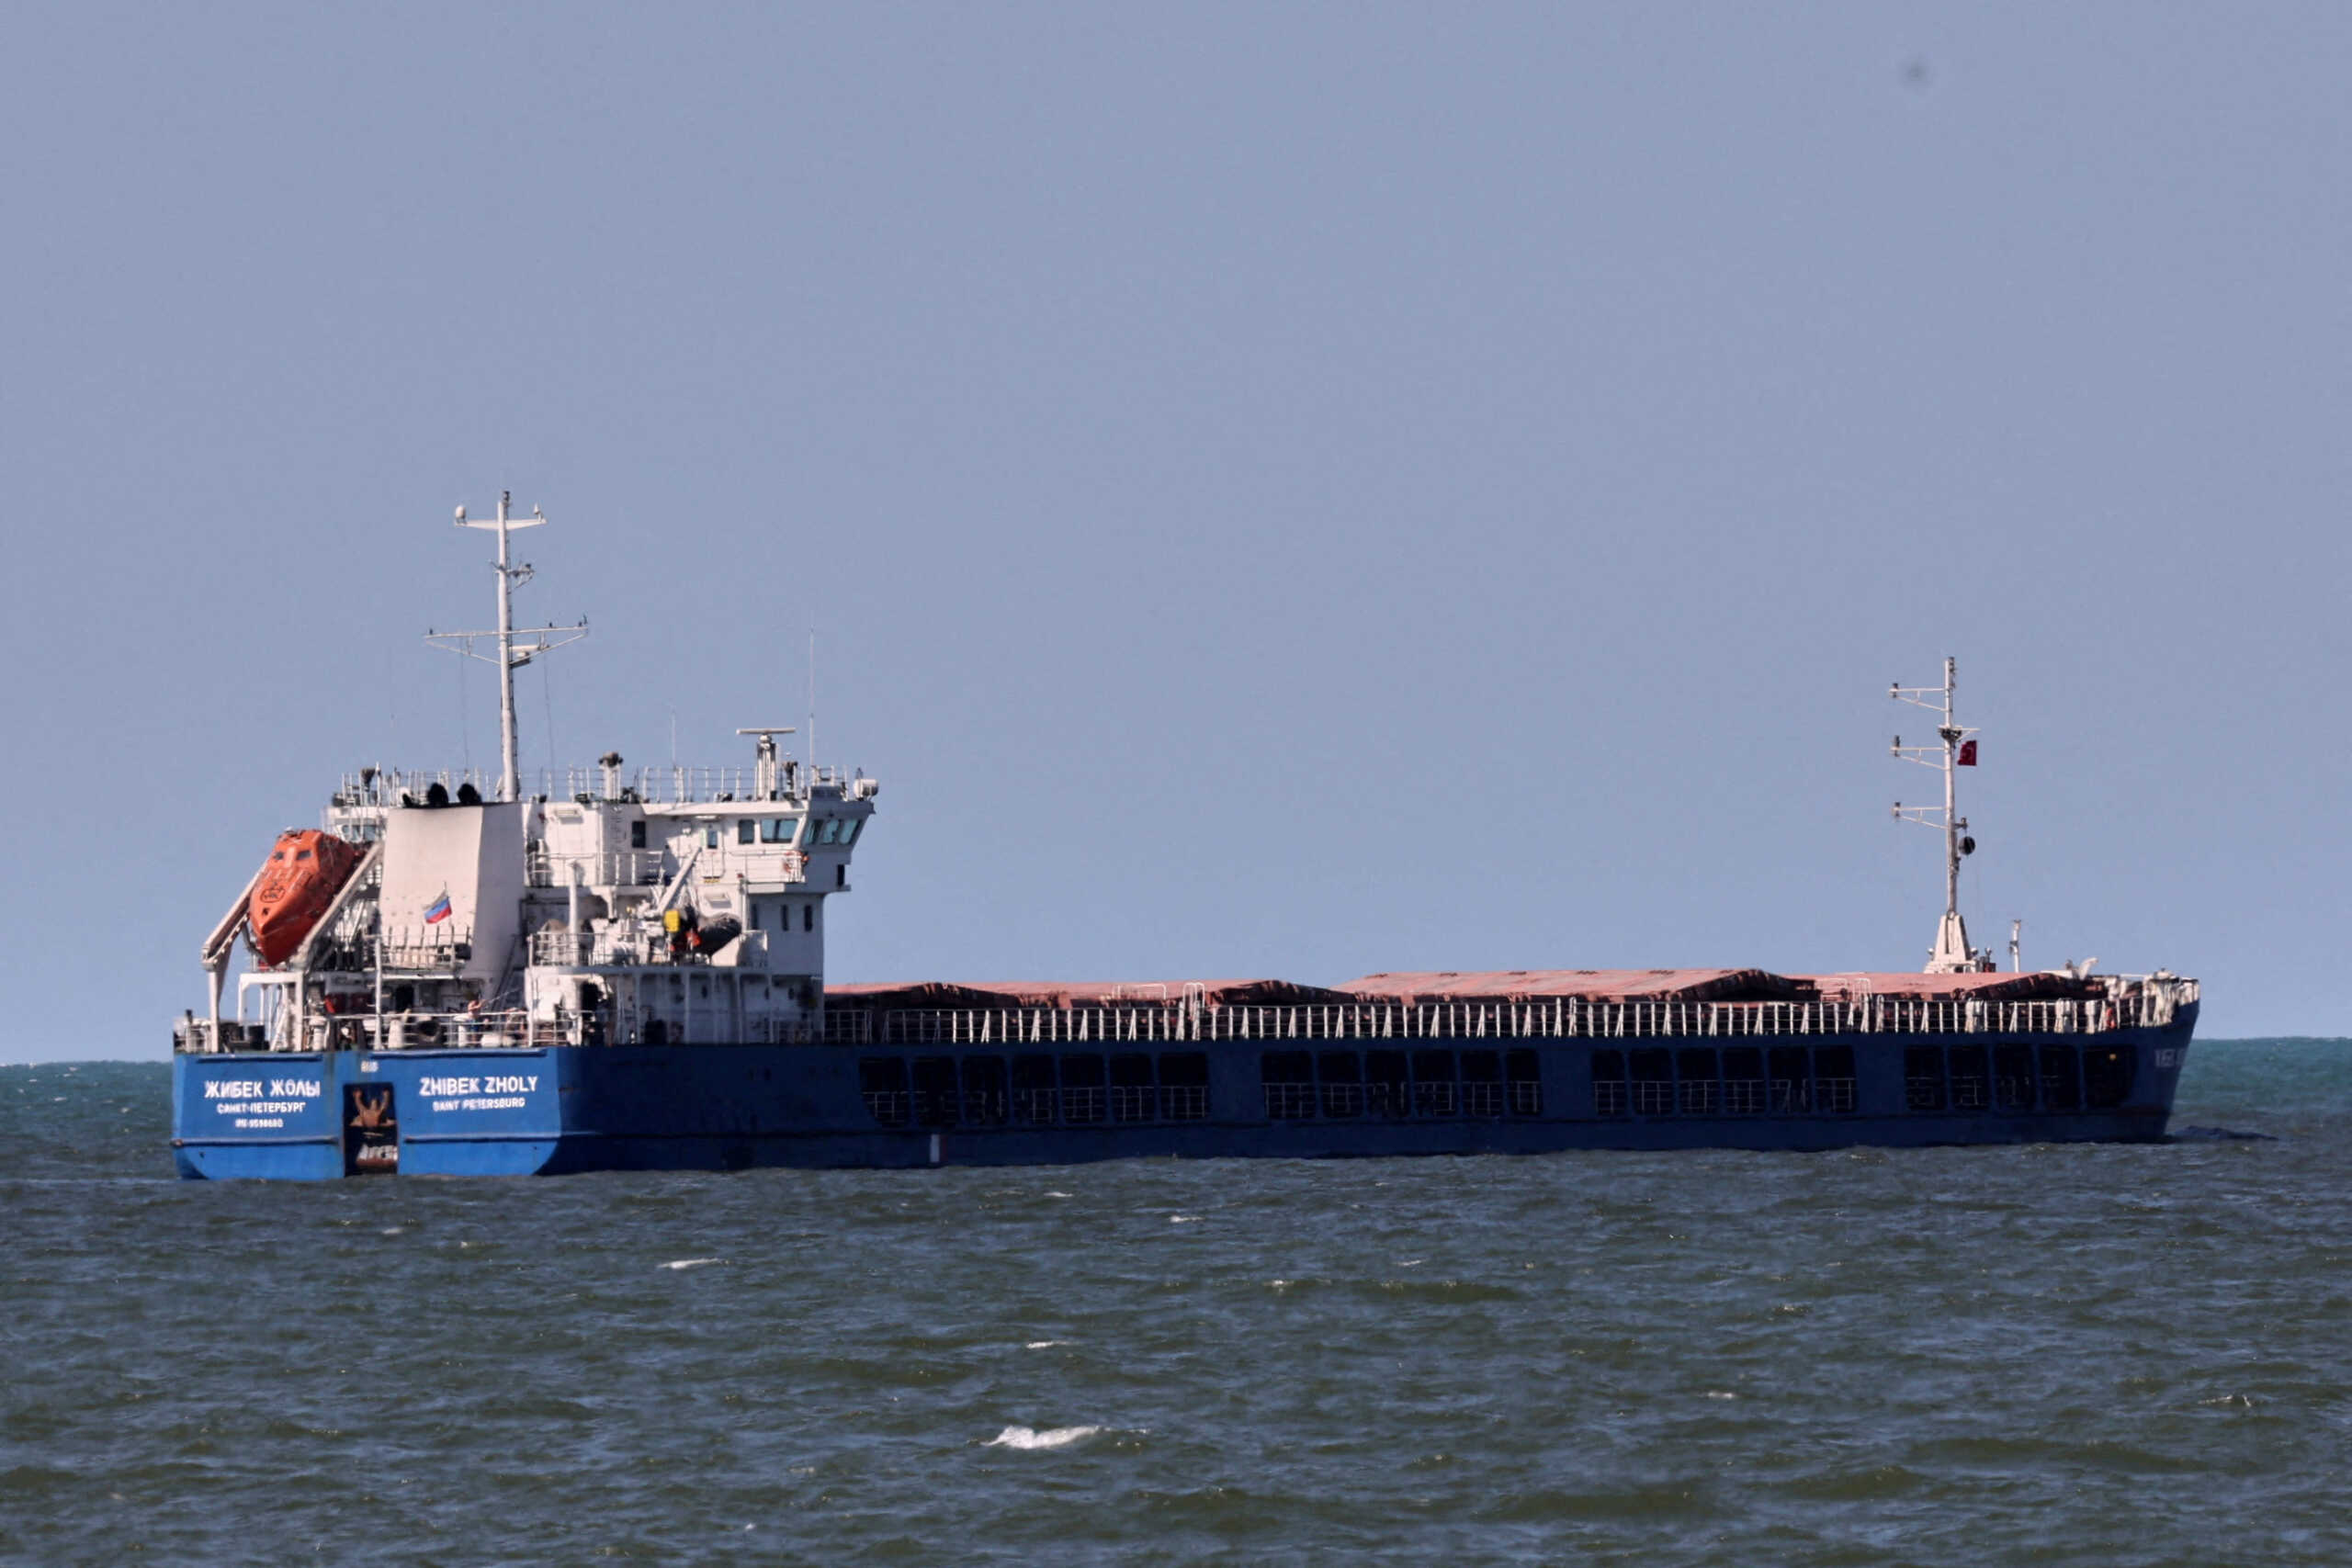 Τουρκία: Ρωσικό πλοίο απέπλευσε από το λιμάνι Καρασού – Οι Ουκρανοί θεωρούν ότι μεταφέρει κλεμμένα σιτηρά